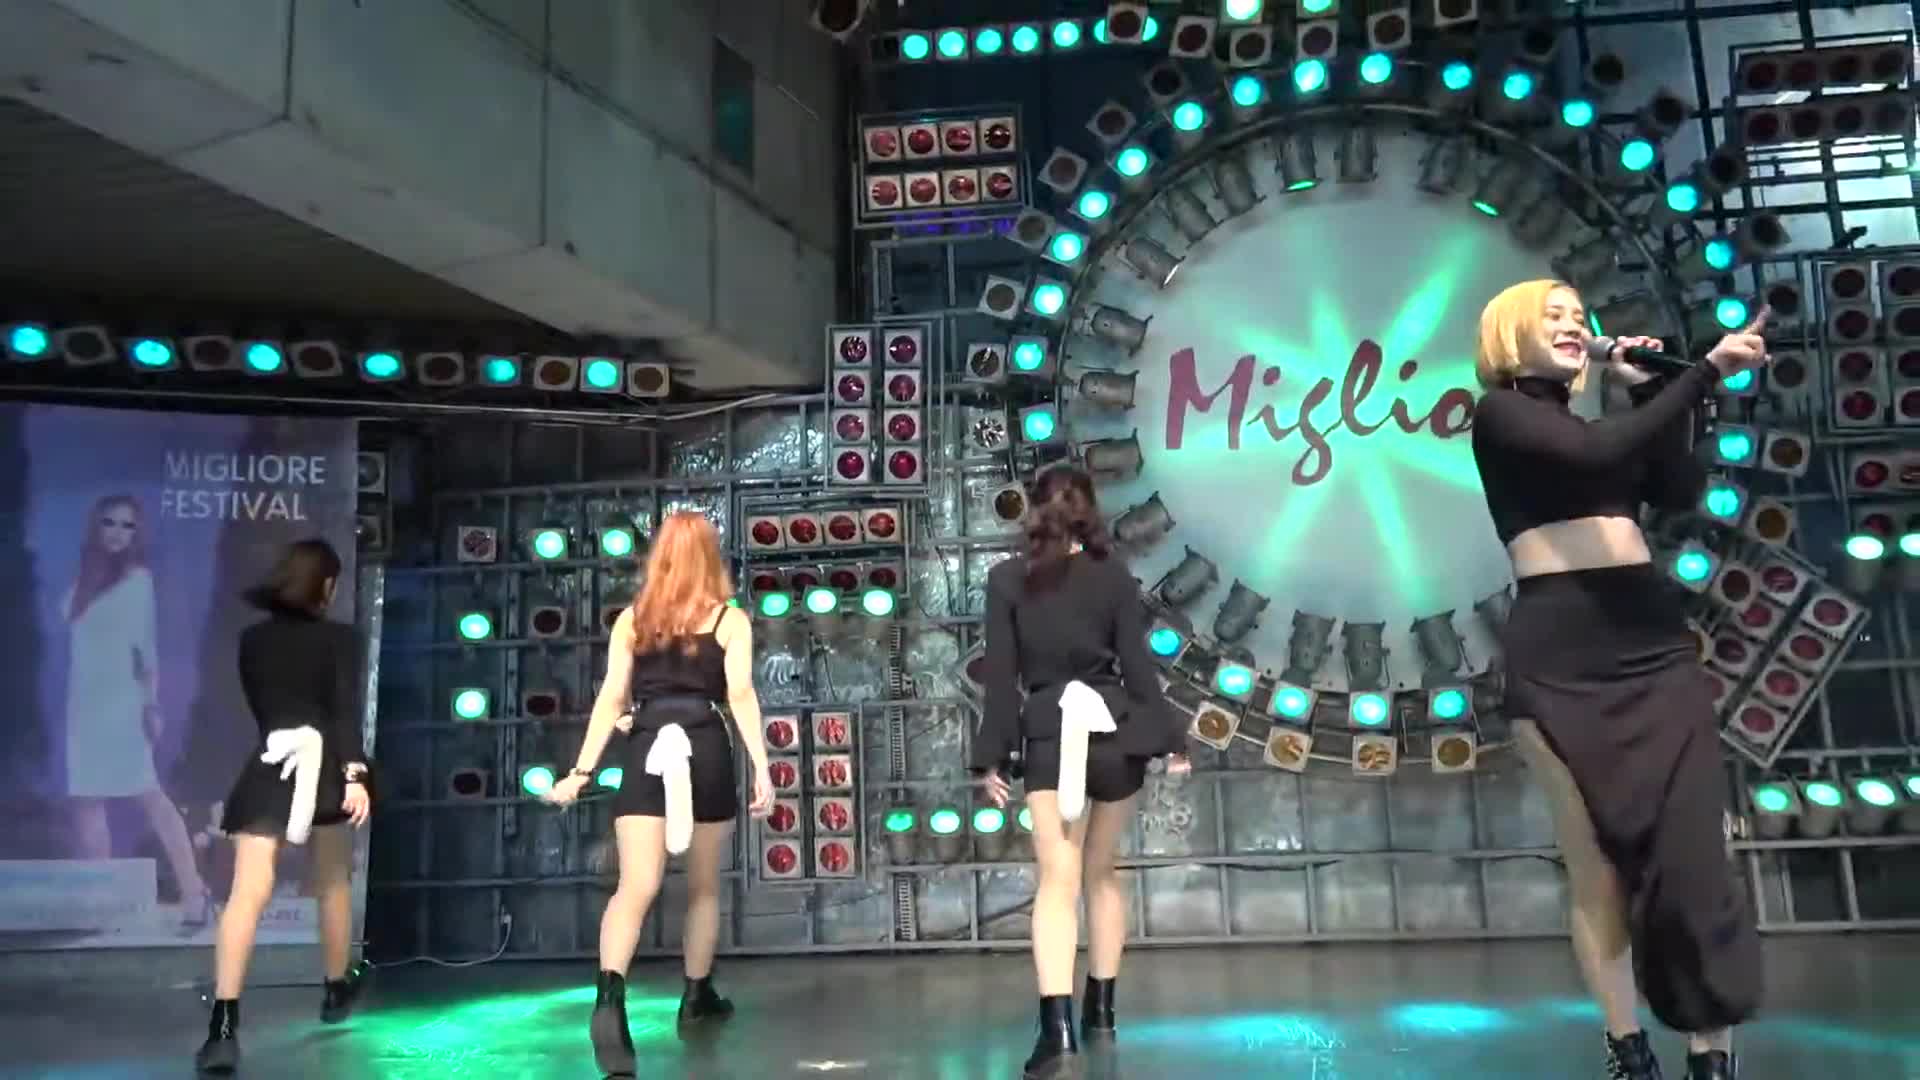 유니카 UNICA 밀당 Push & Pull 동대문 밀리오레 게릴라콘서트_ FanCam